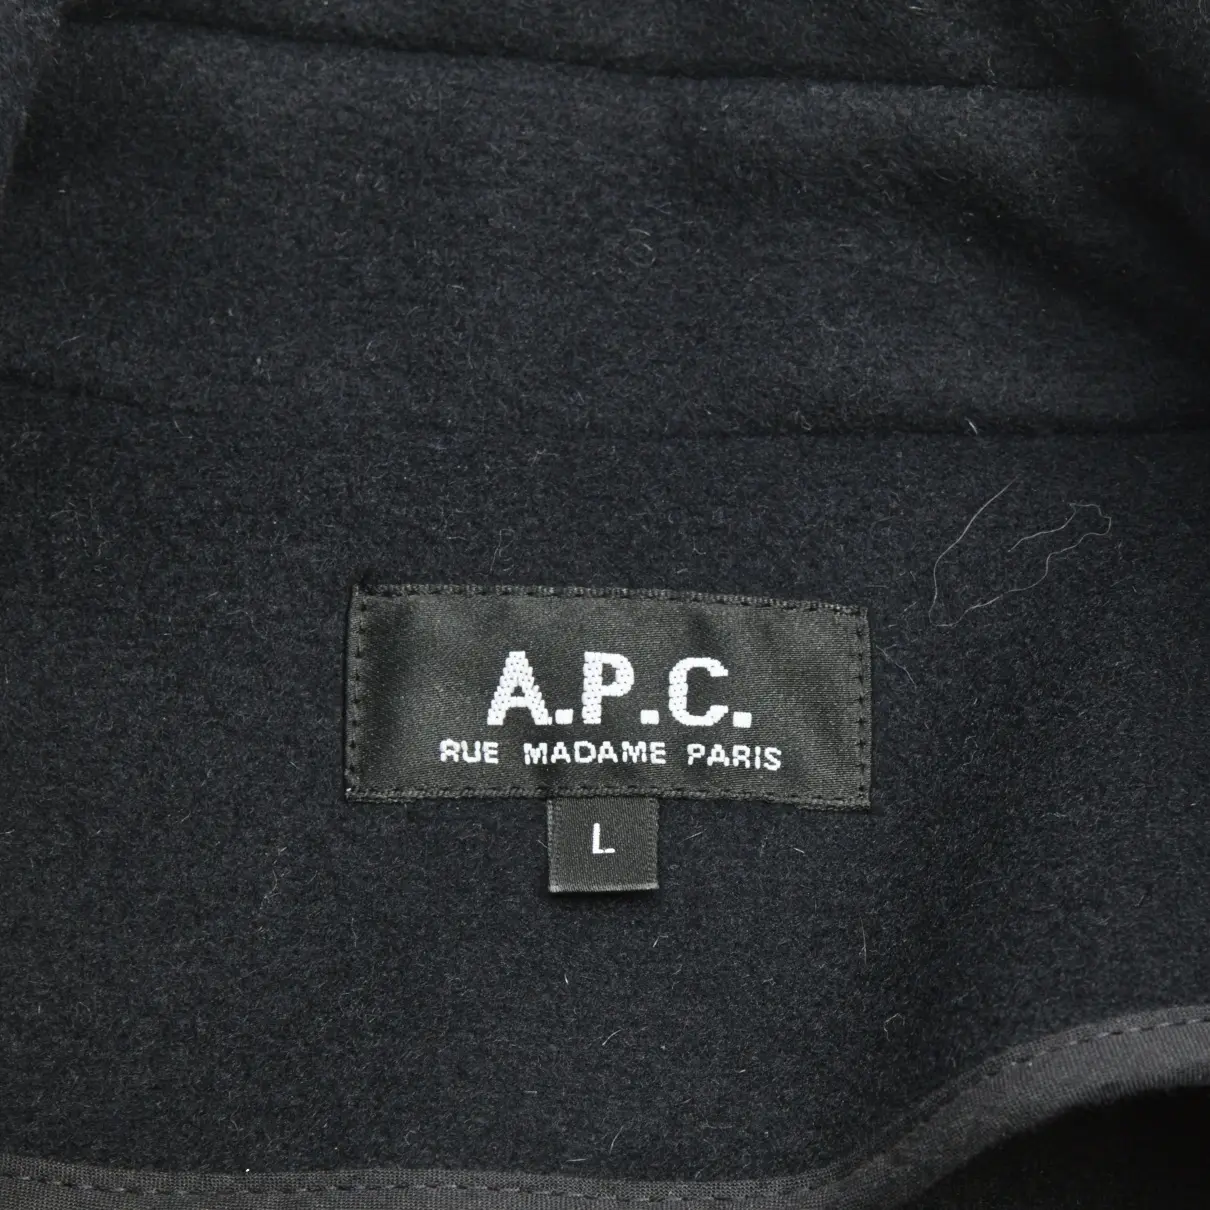 Buy APC COAT online